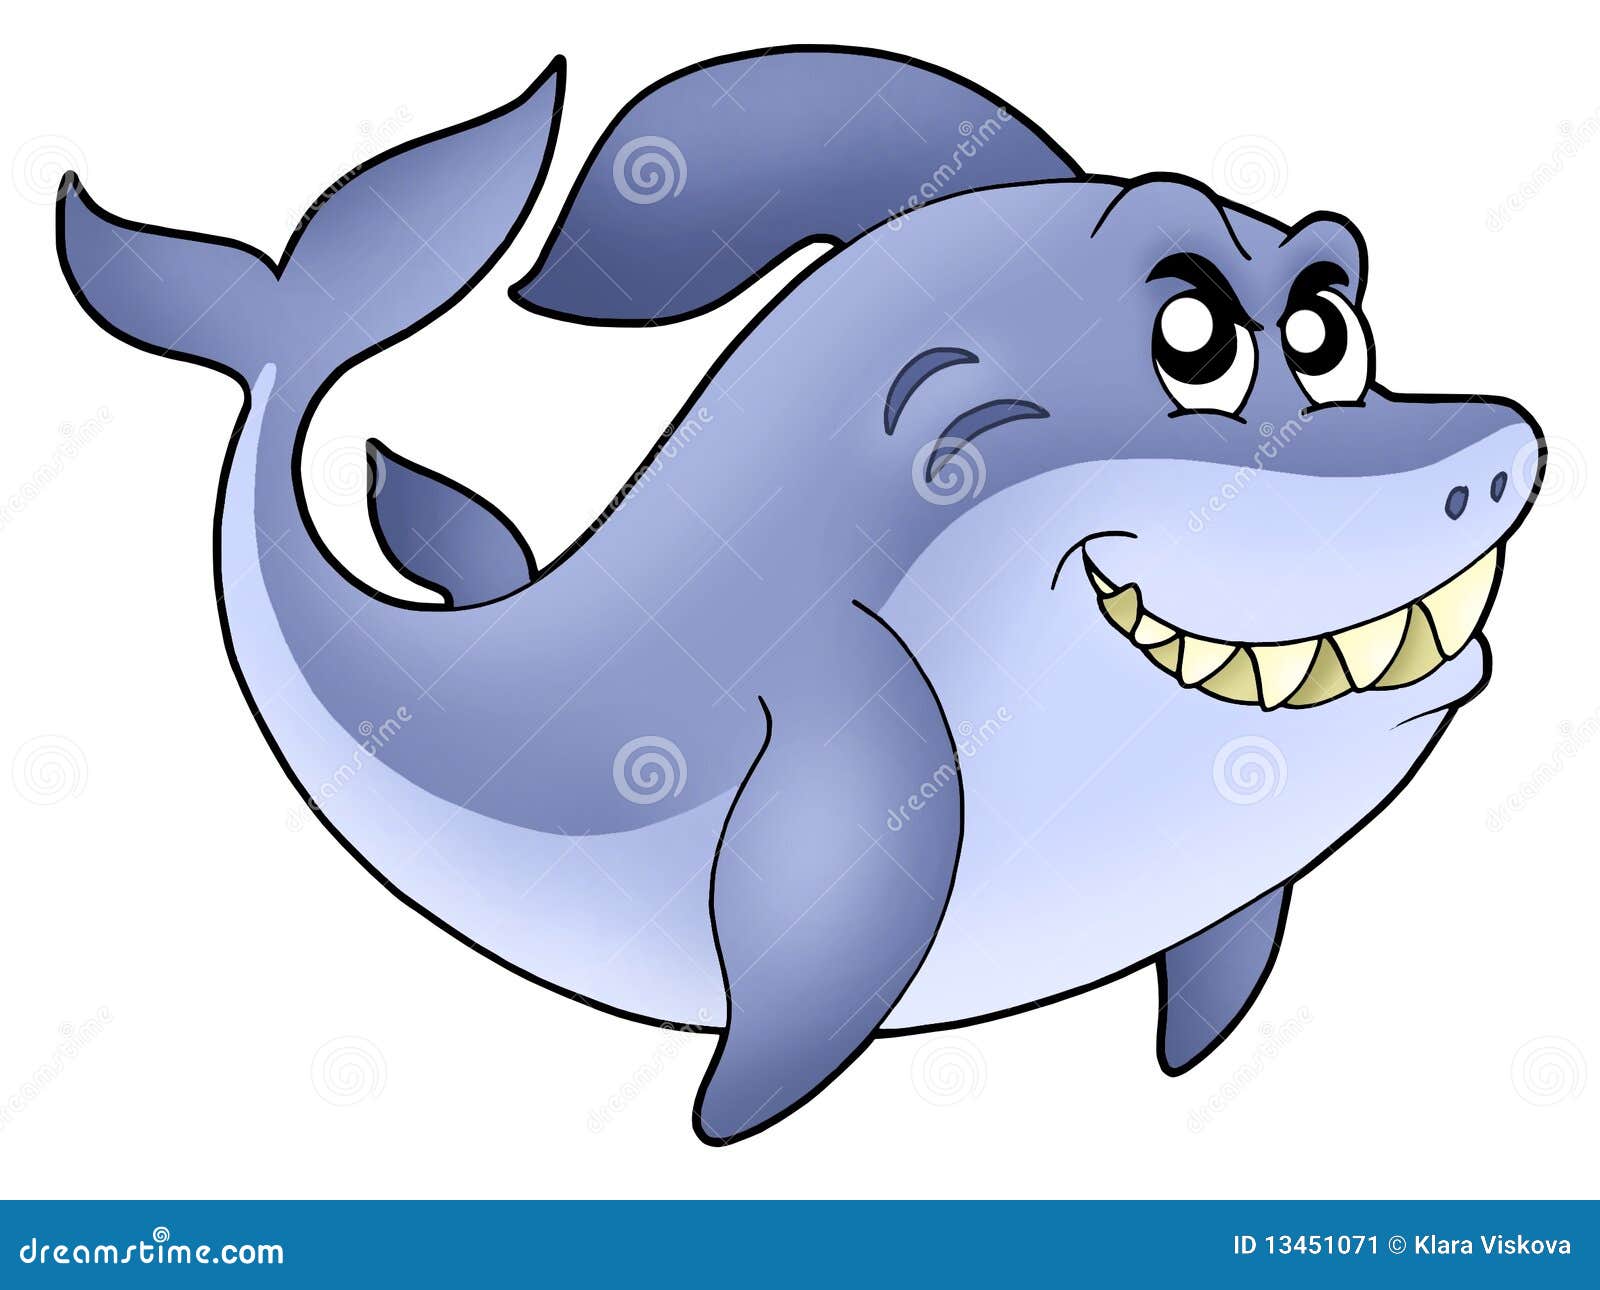 Big cartoon shark stock illustration. Illustration of fins - 13451071